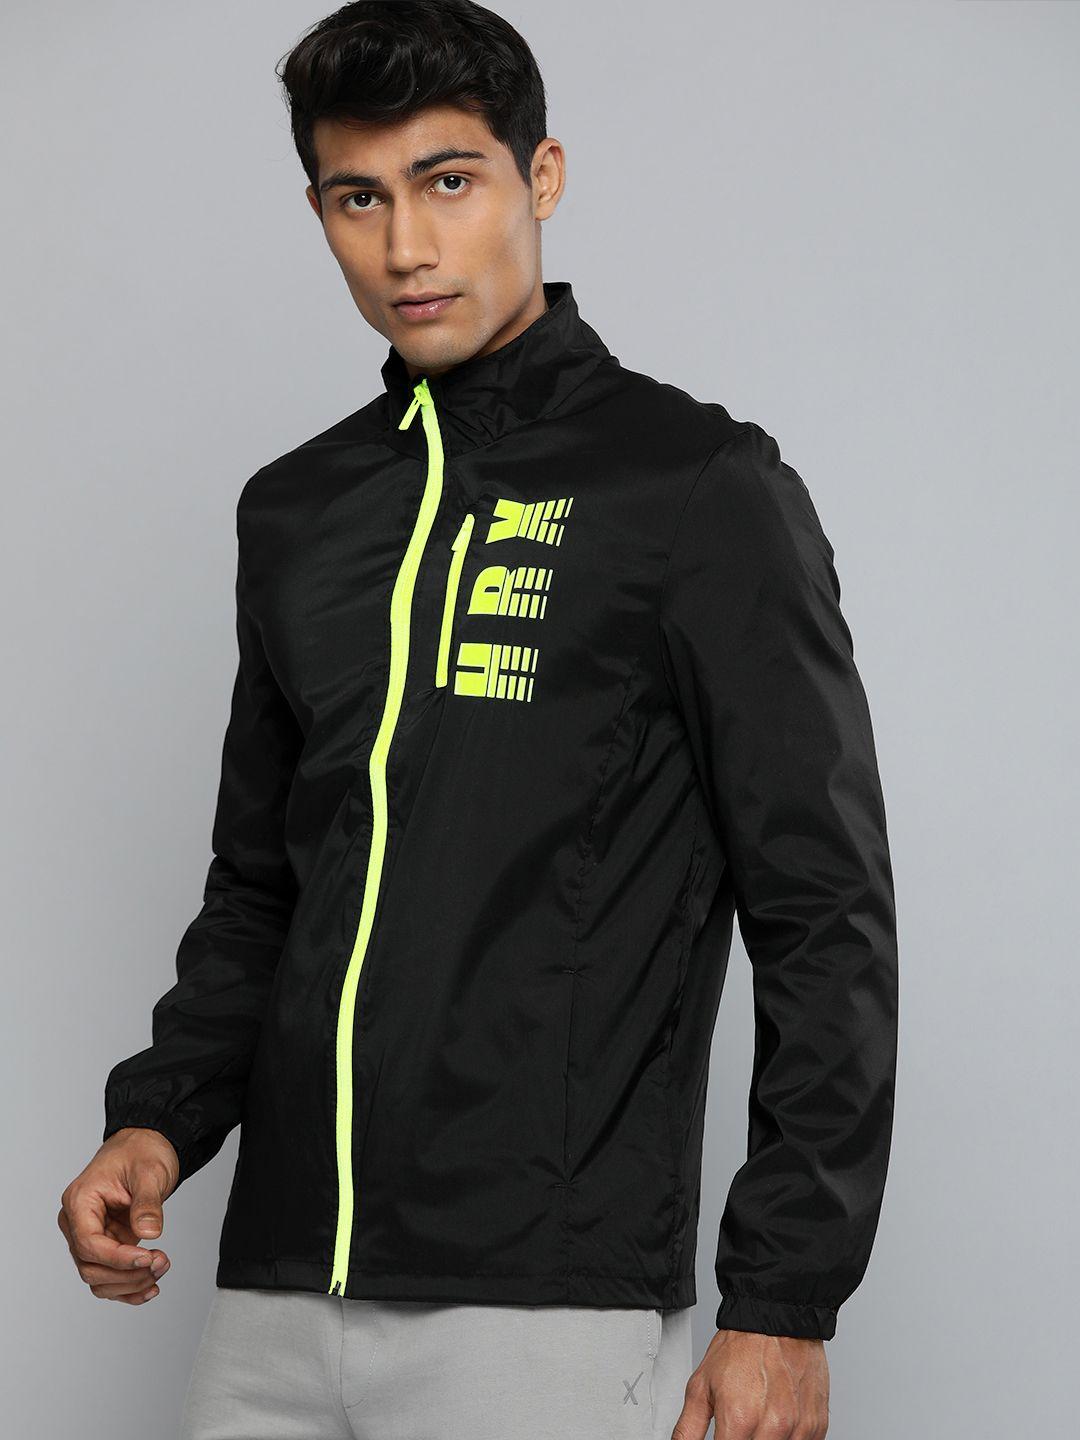 hrx by hrithik roshan running men black light weight brand logo sporty jacket